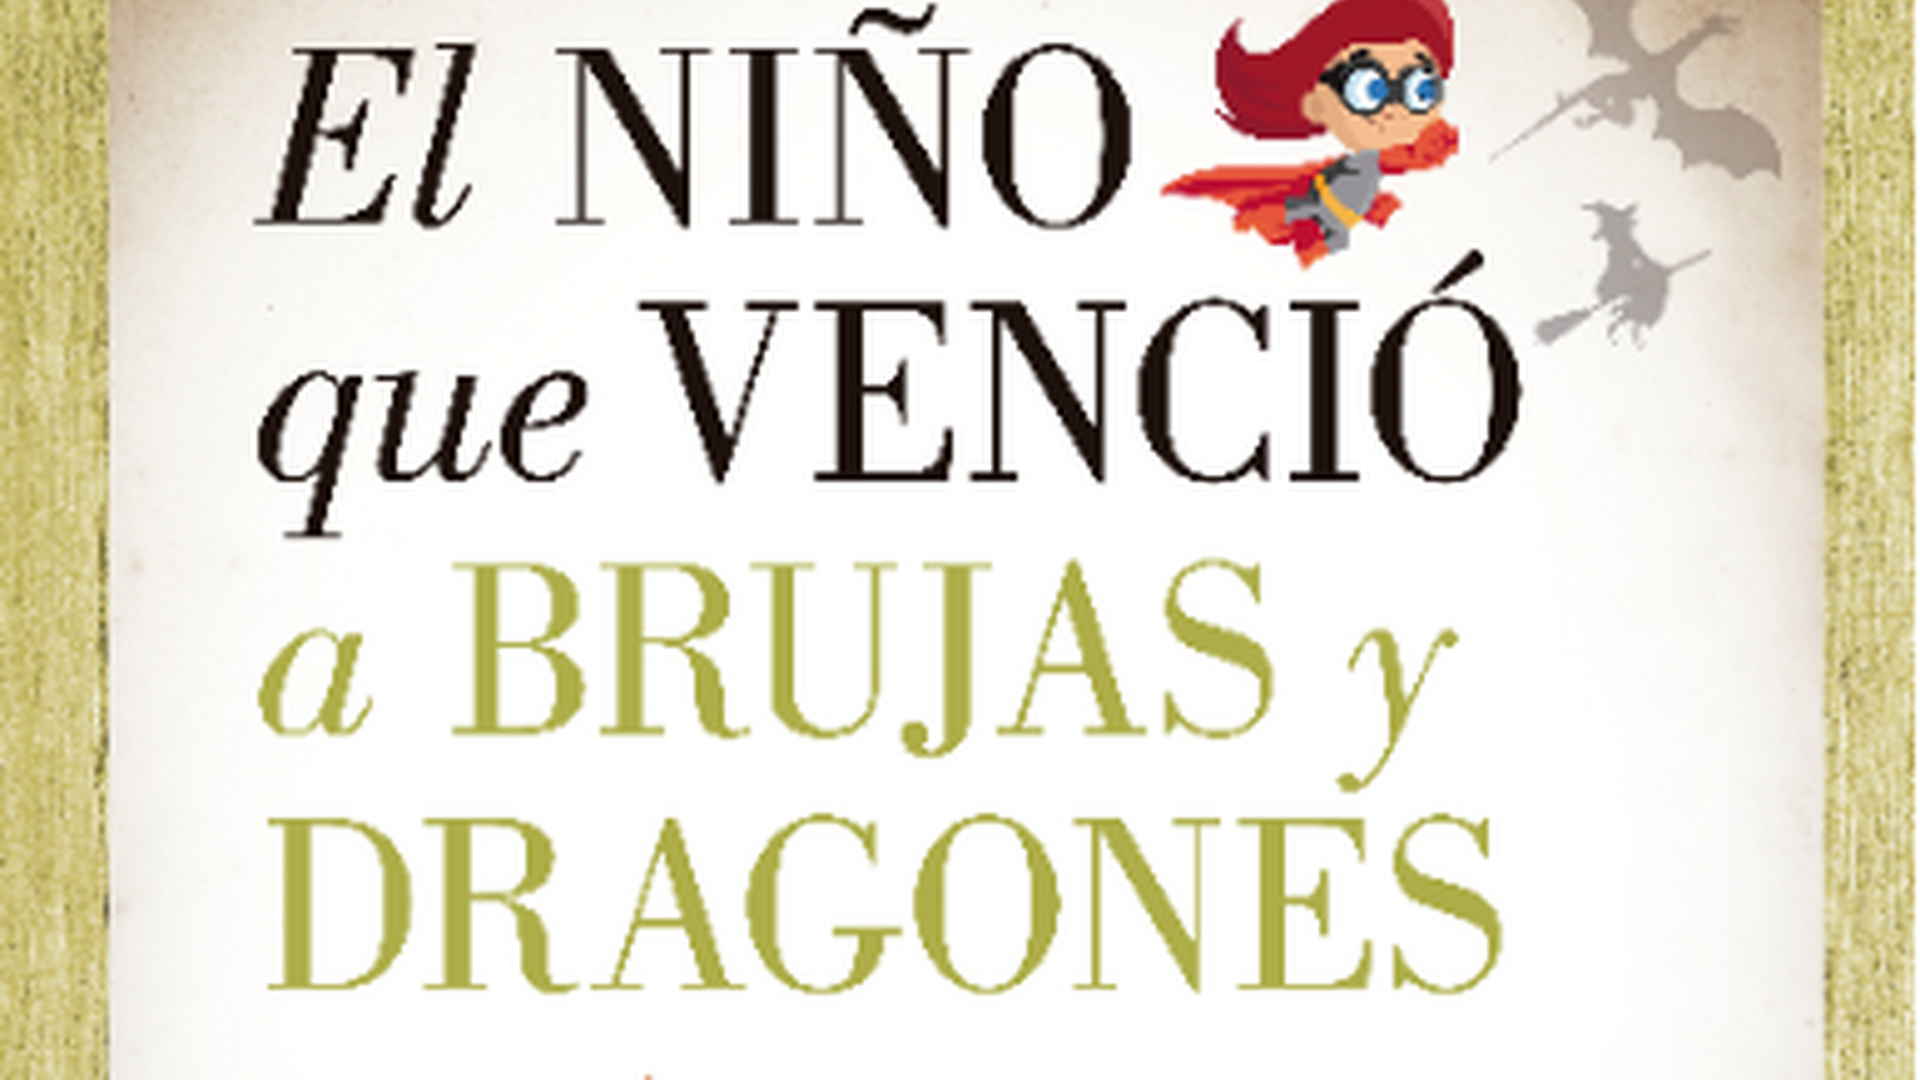 'El ni&ntilde;o que venci&oacute; a brujas y dragones', de Fernando Alberca